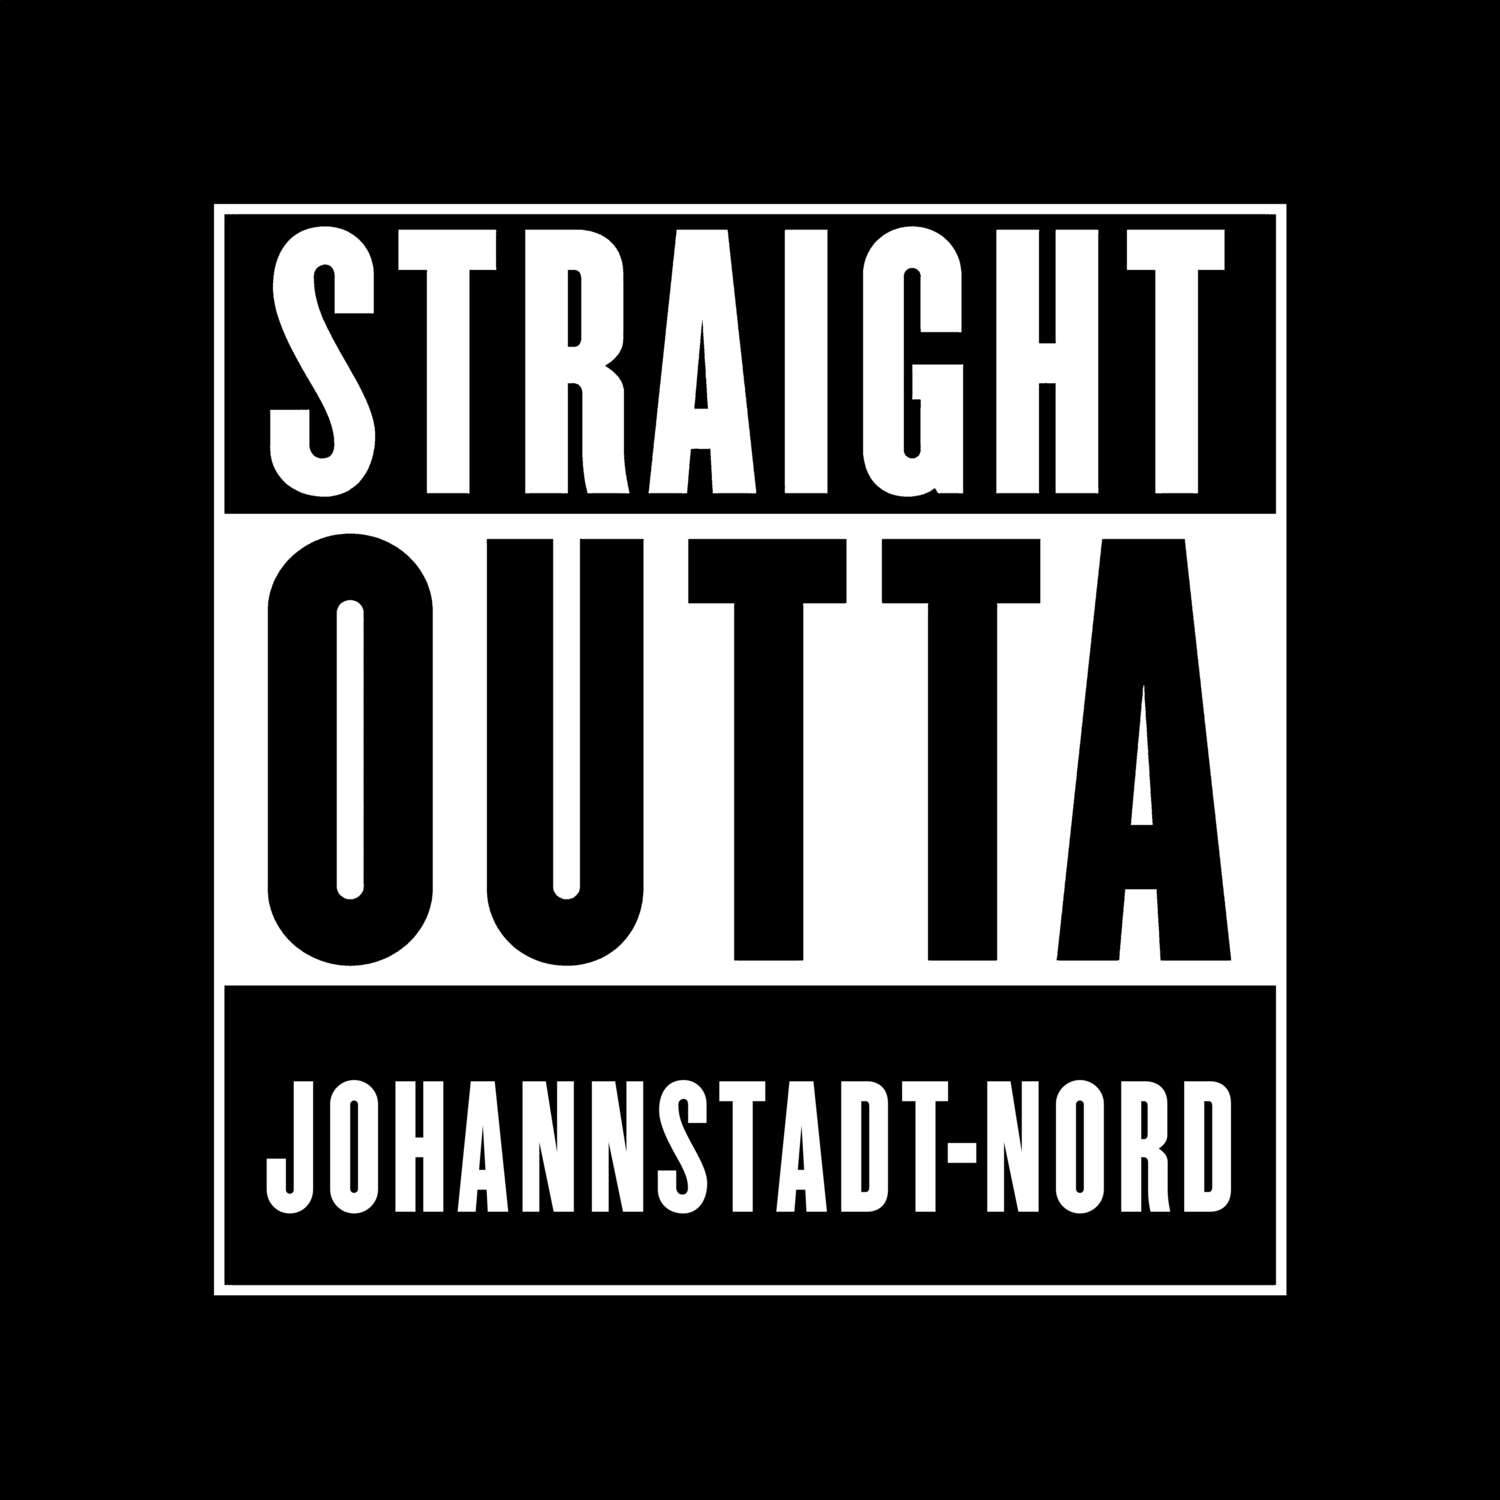 Johannstadt-Nord T-Shirt »Straight Outta«